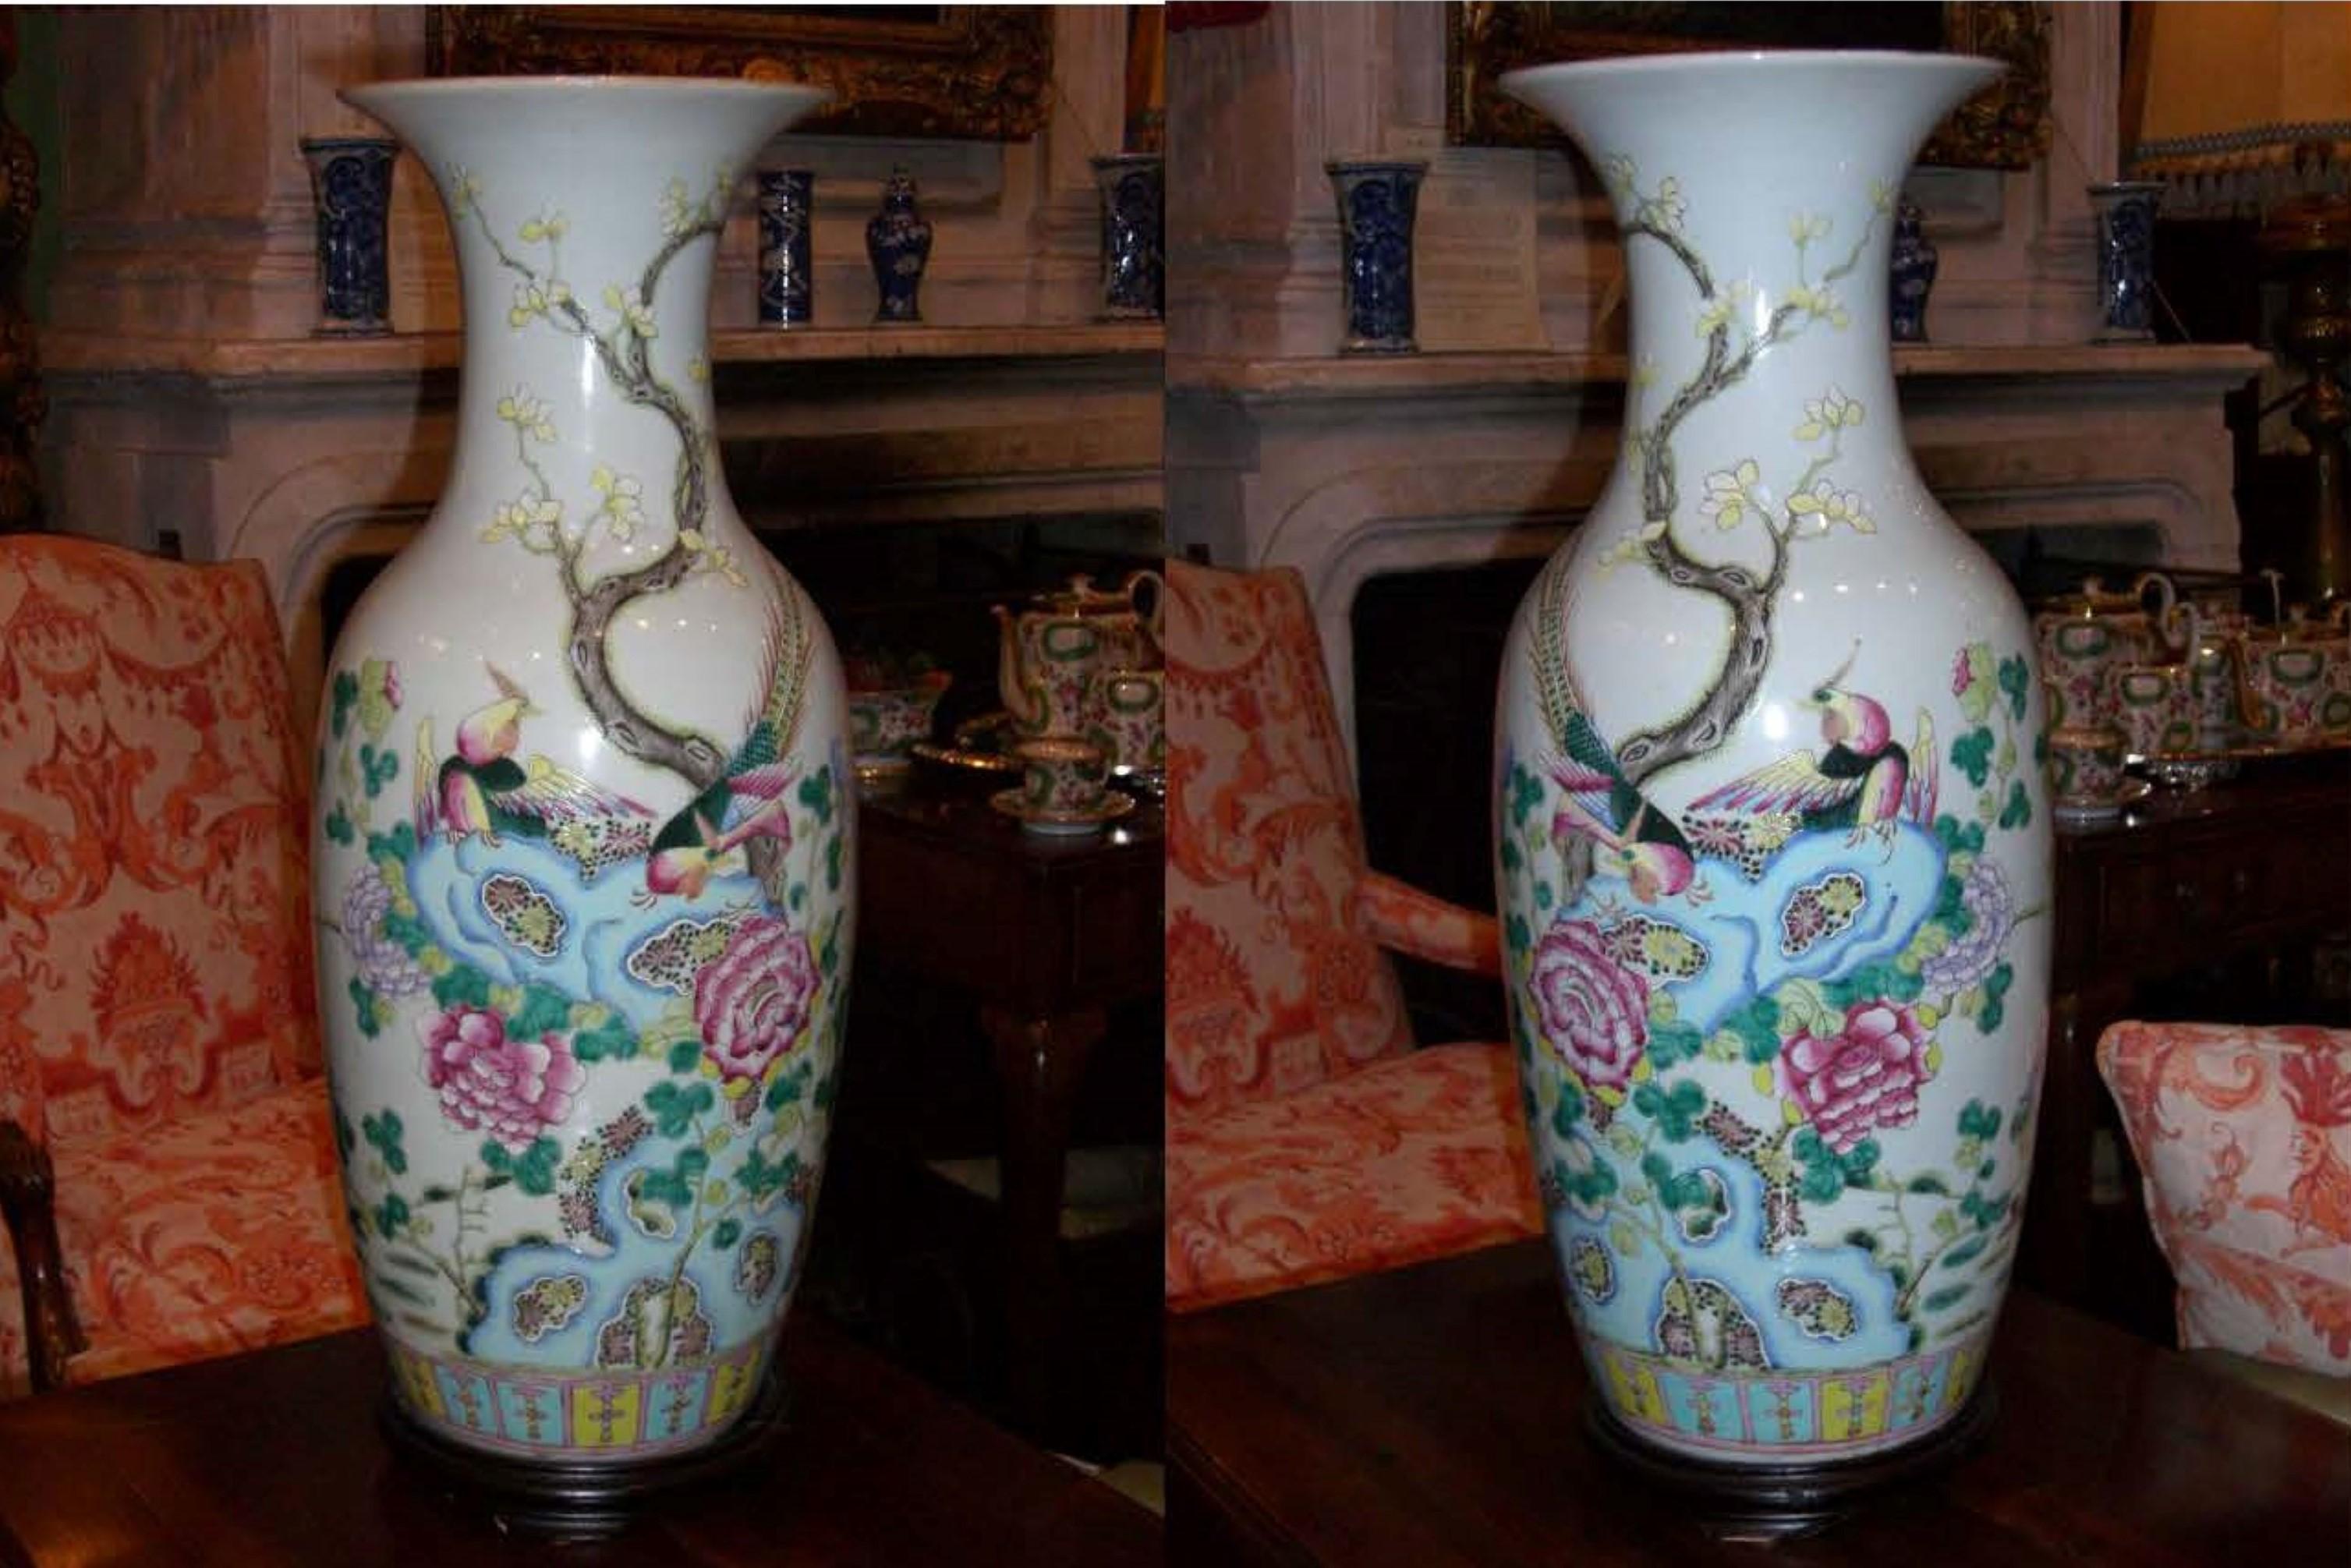 Sehr schöne und detaillierte Paar Tao Kuang-Dynastie chinesischen Porzellan-Vasen ca. 2. Hälfte des 19. Jahrhunderts Detaillierte bunte Schmetterlinge und Storch am See und die Vögel des Paradieses.
Es könnte ein großartiges Mittelstück auf einem